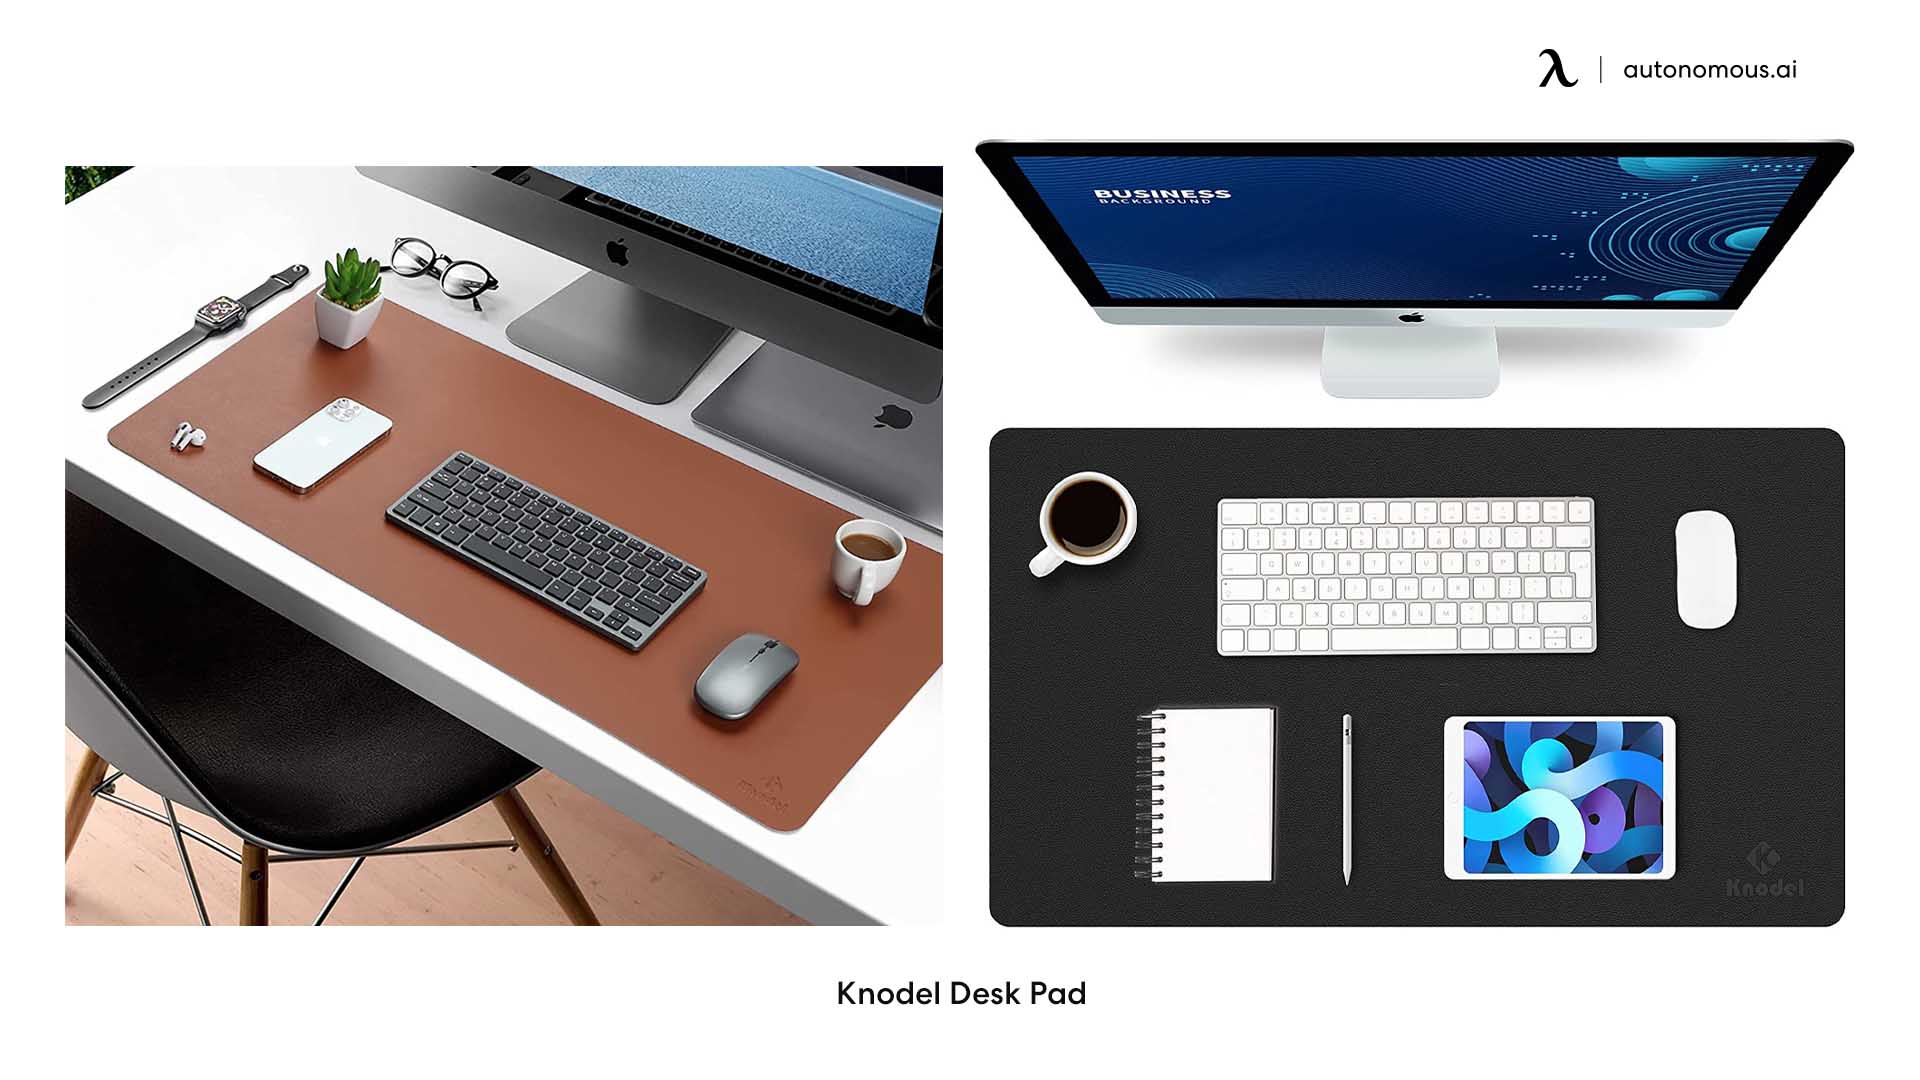 Knodel Desk Pad